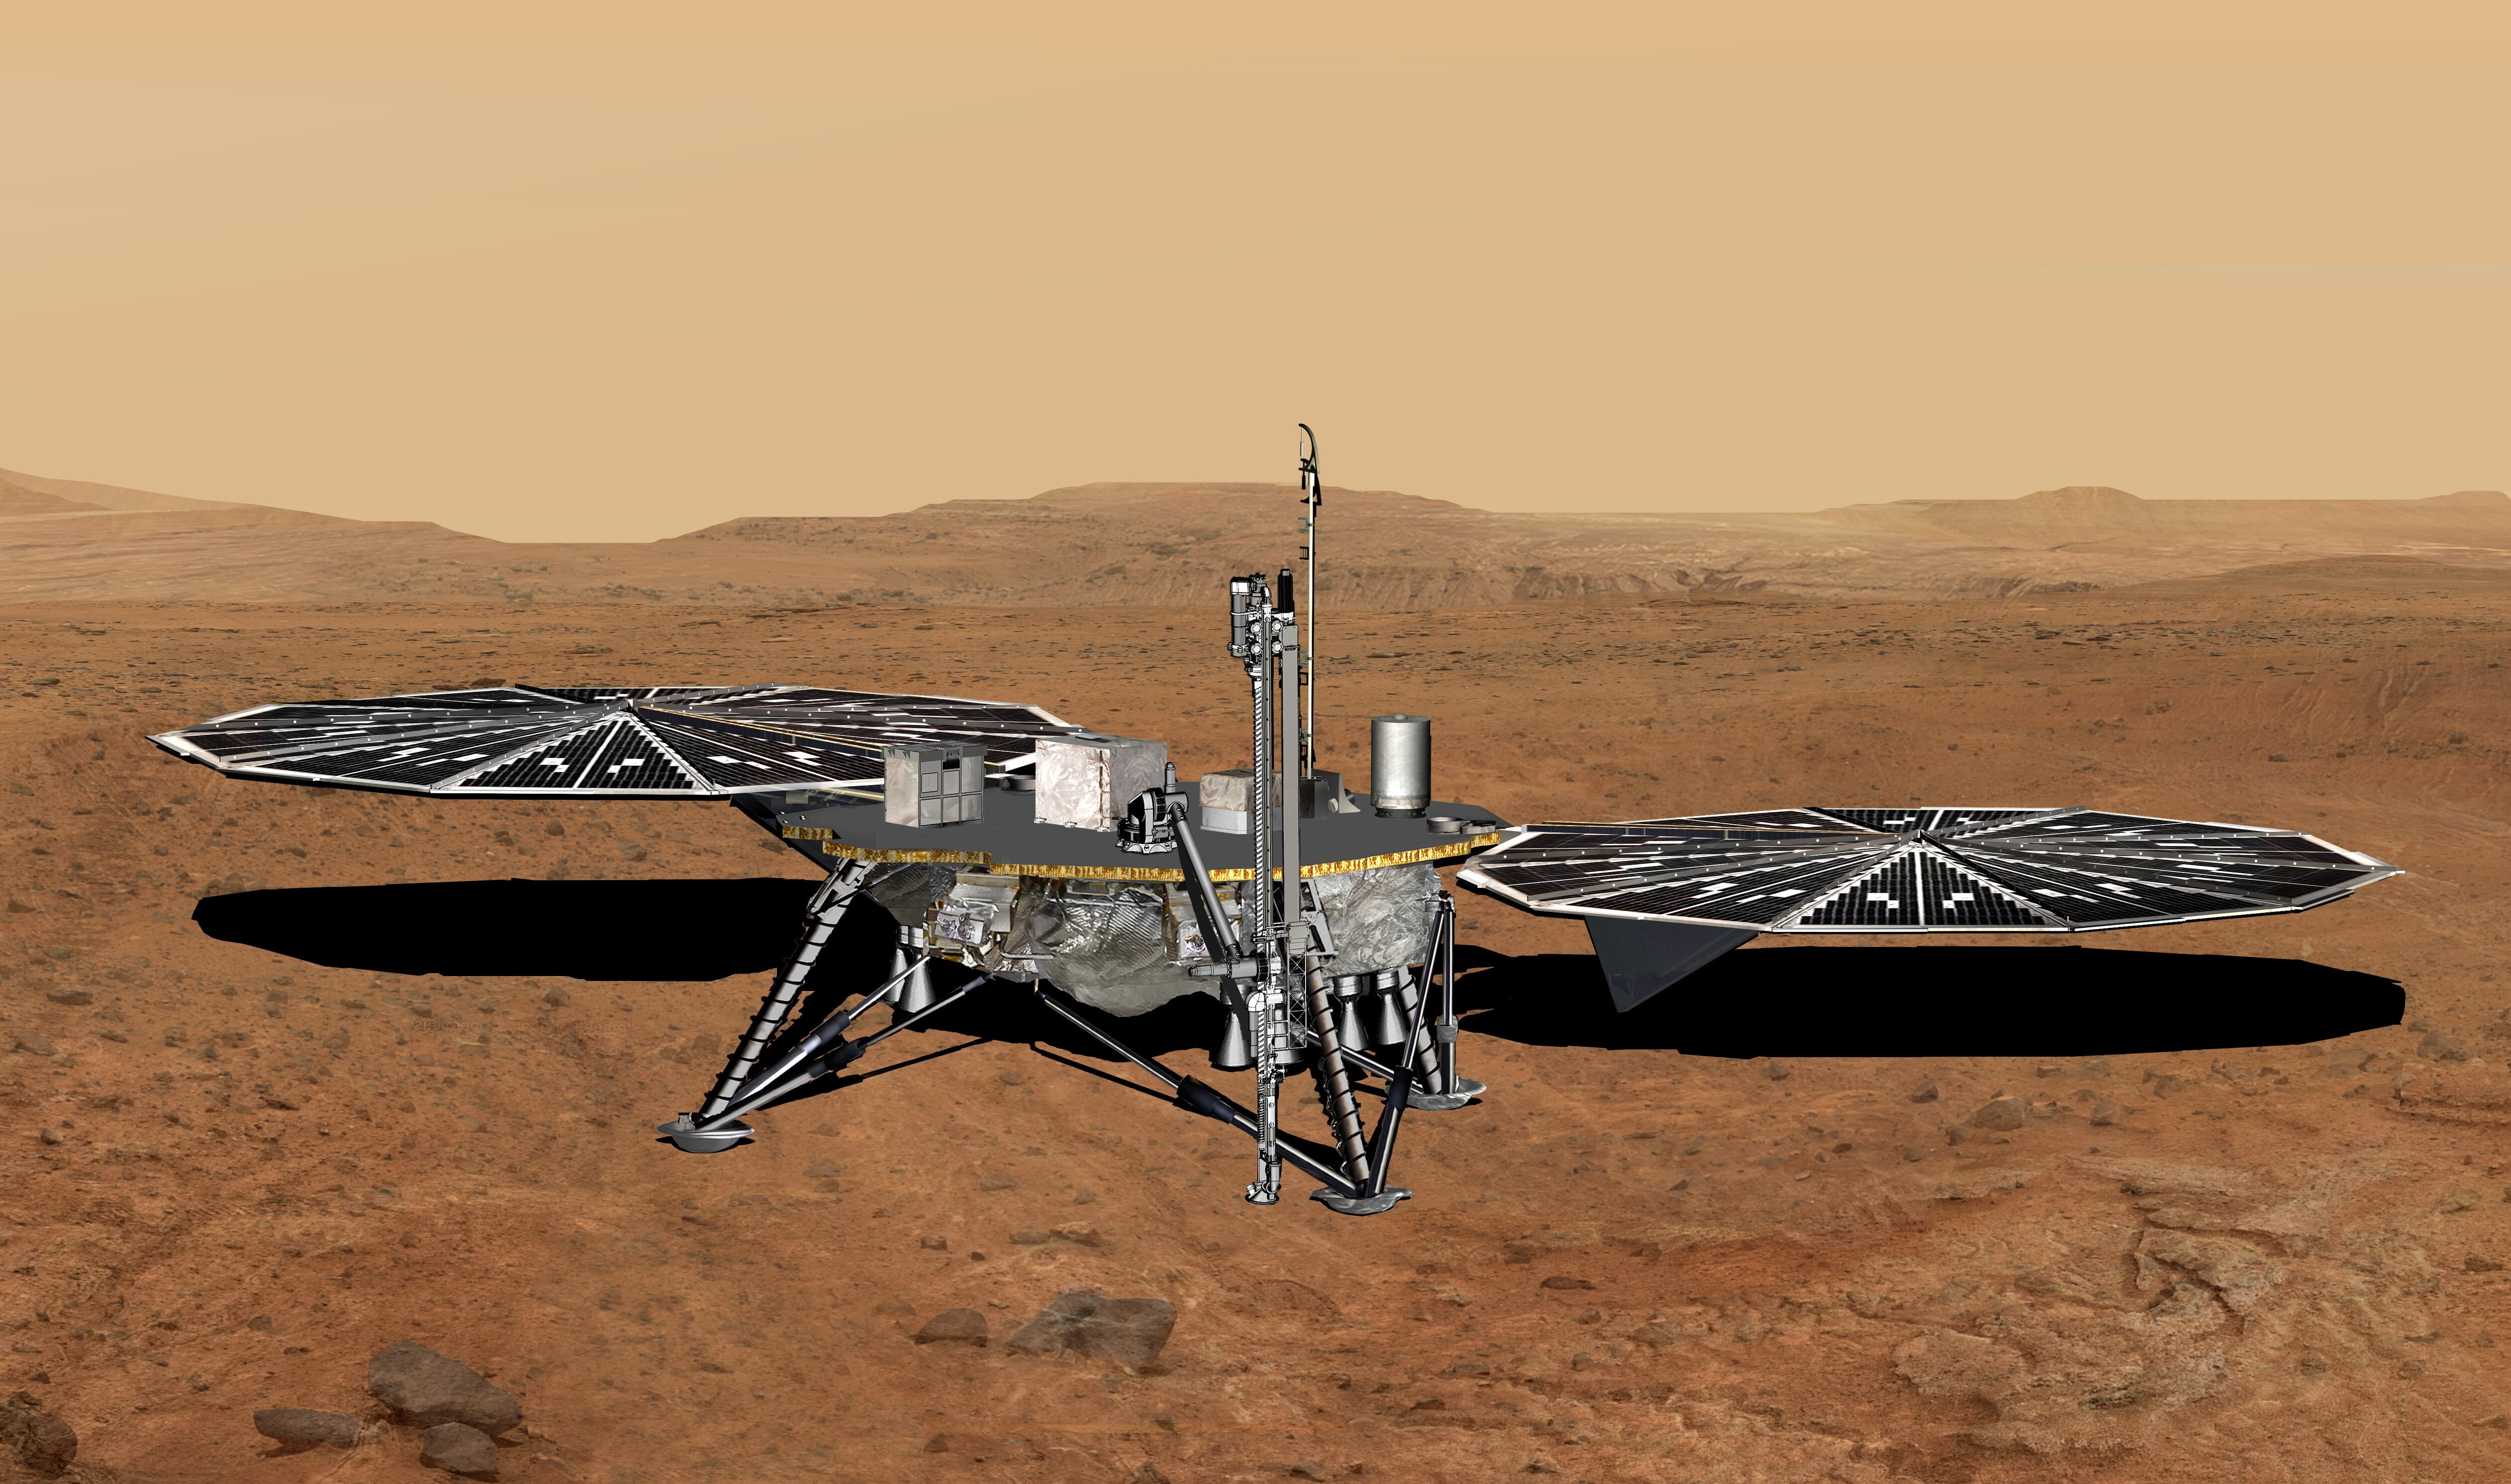 Un módulo de aterrizaje achaparrado con cuatro patas y dos grandes paneles solares en la superficie de un planeta desértico de color naranja rojizo